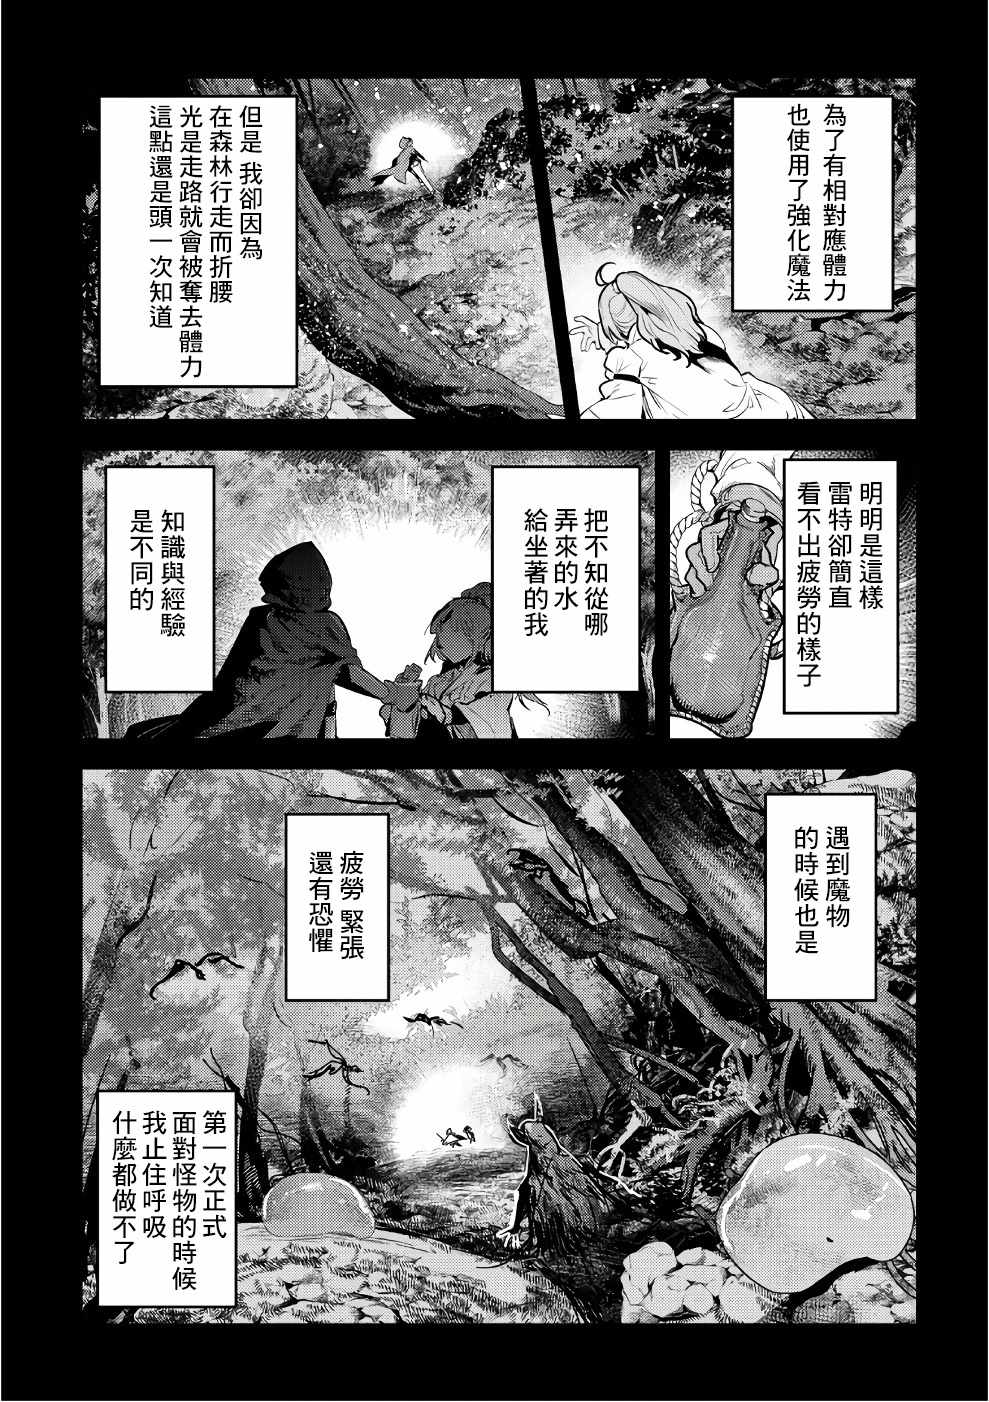 事与愿违的不死冒险者03漫画,第01卷特典4图